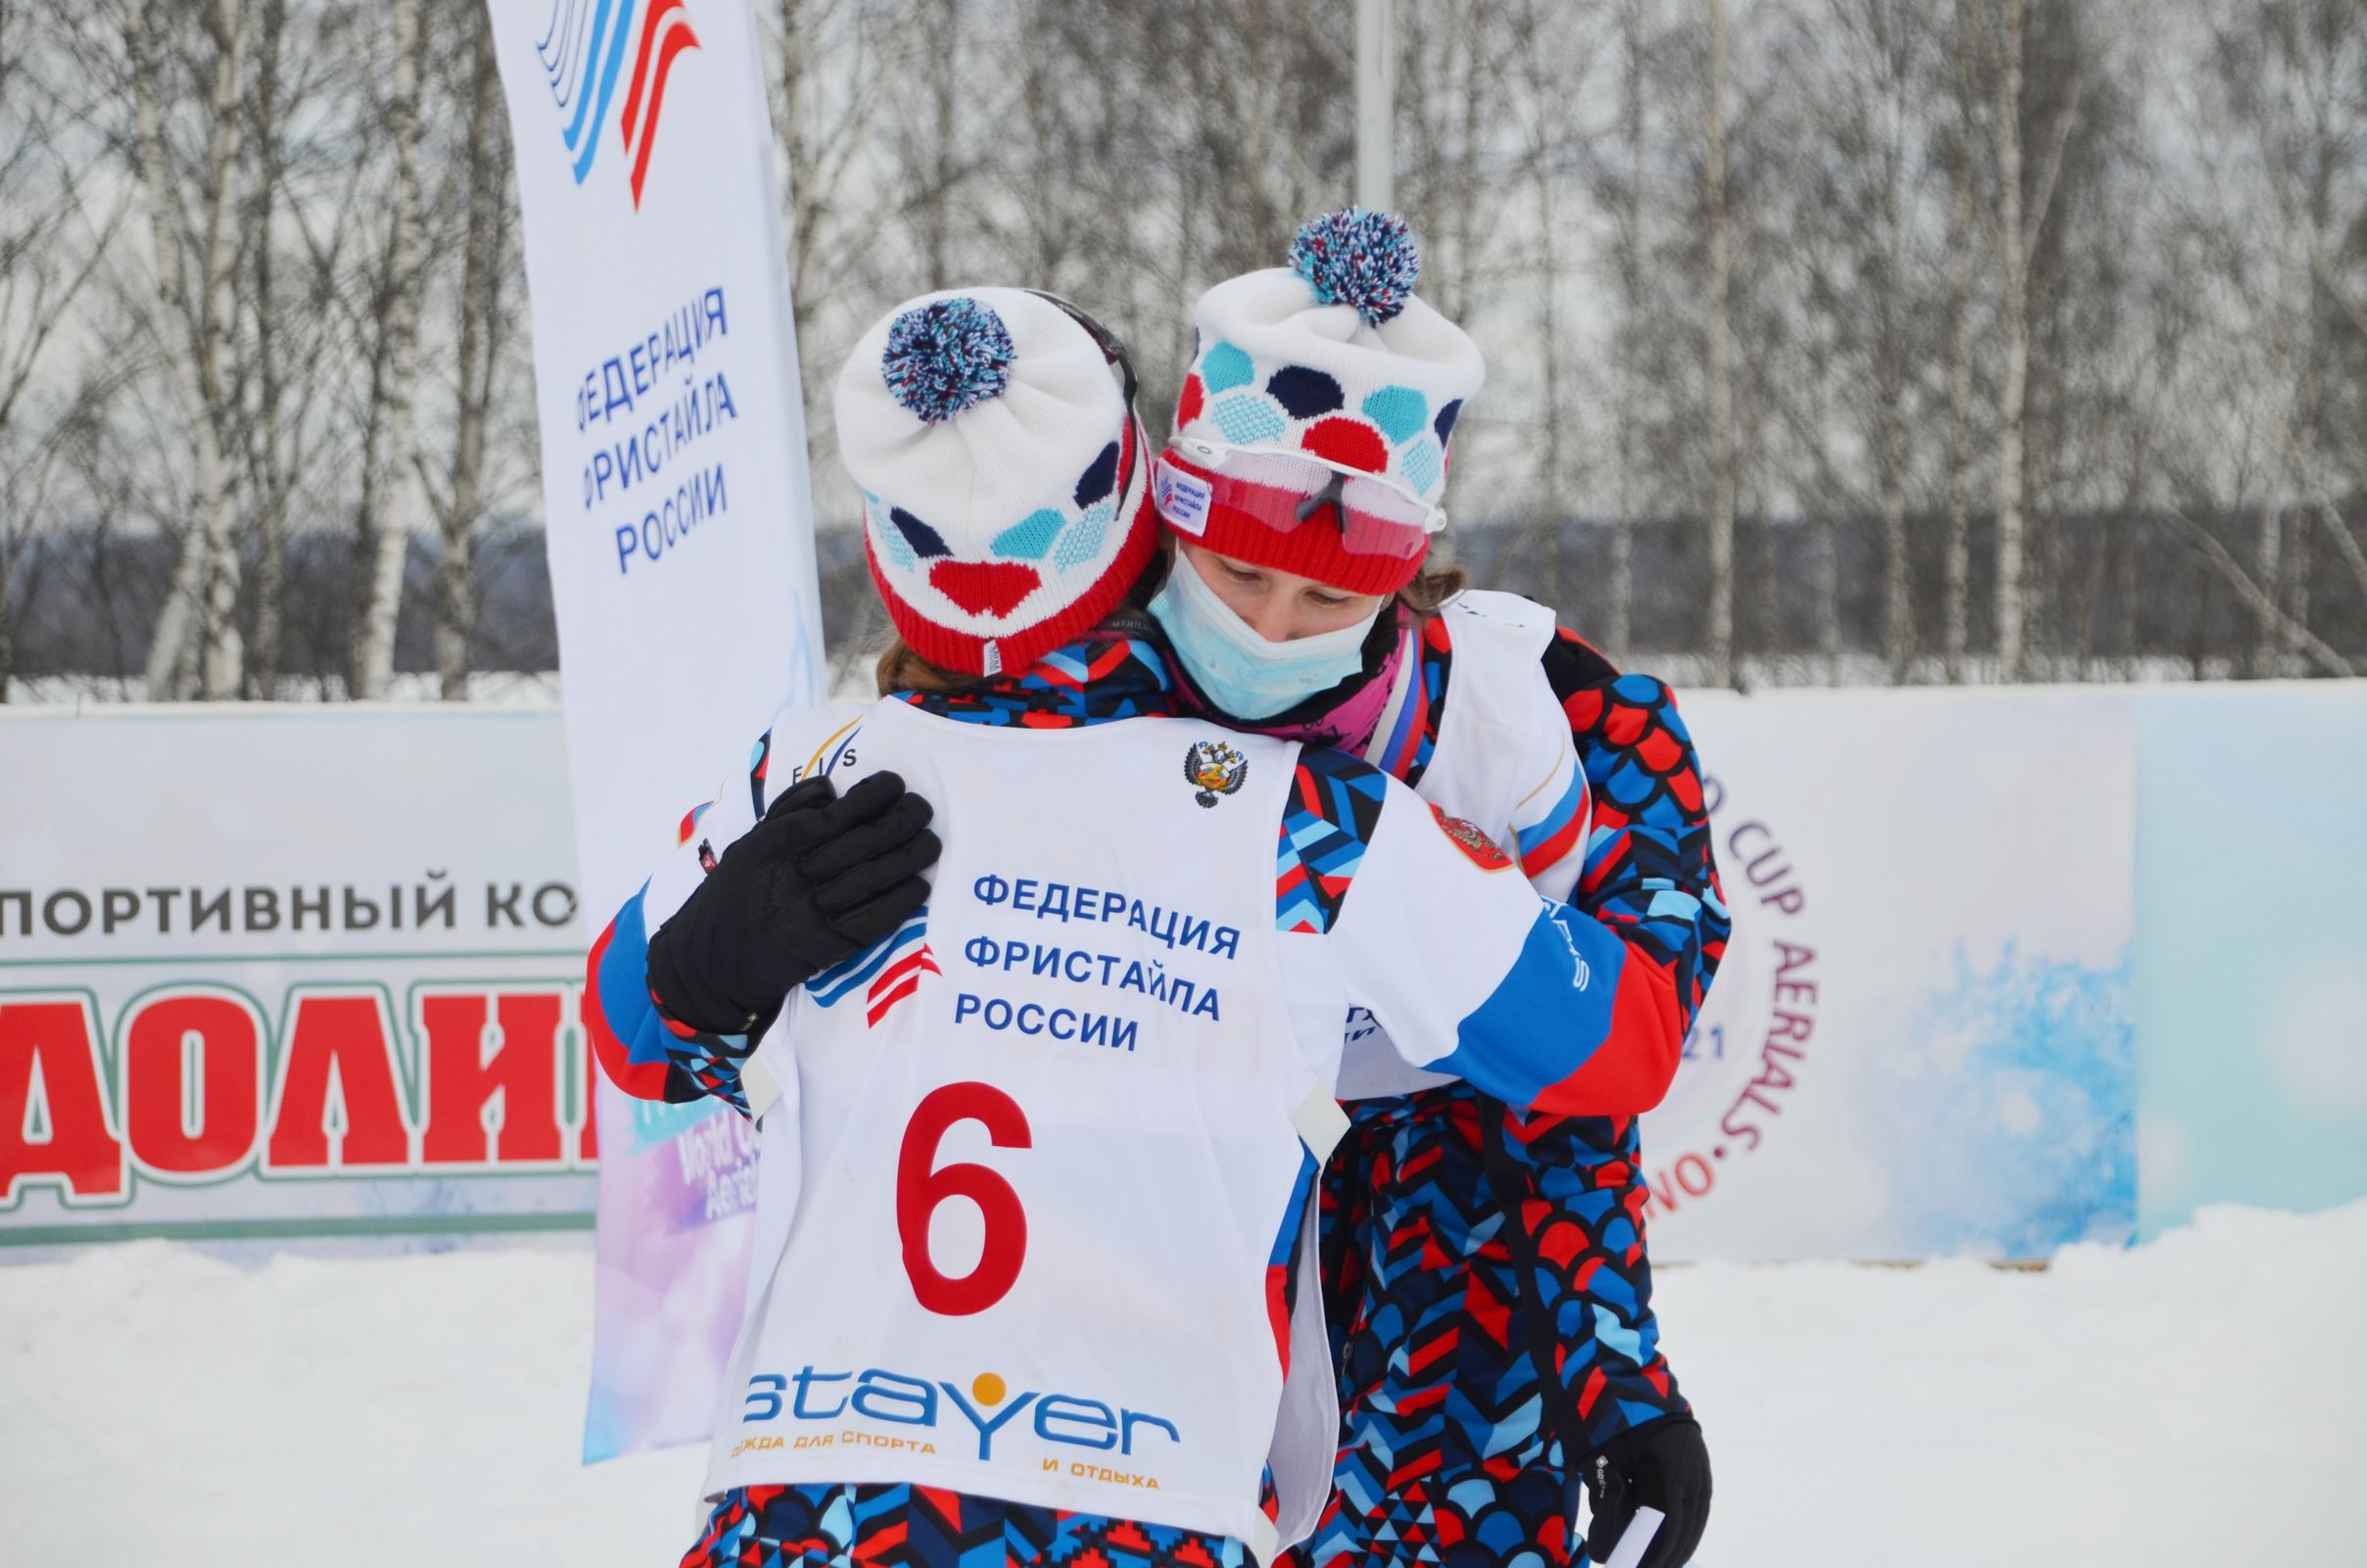 Ярославцы заняли первые места на этапе Кубка России по фристайлу